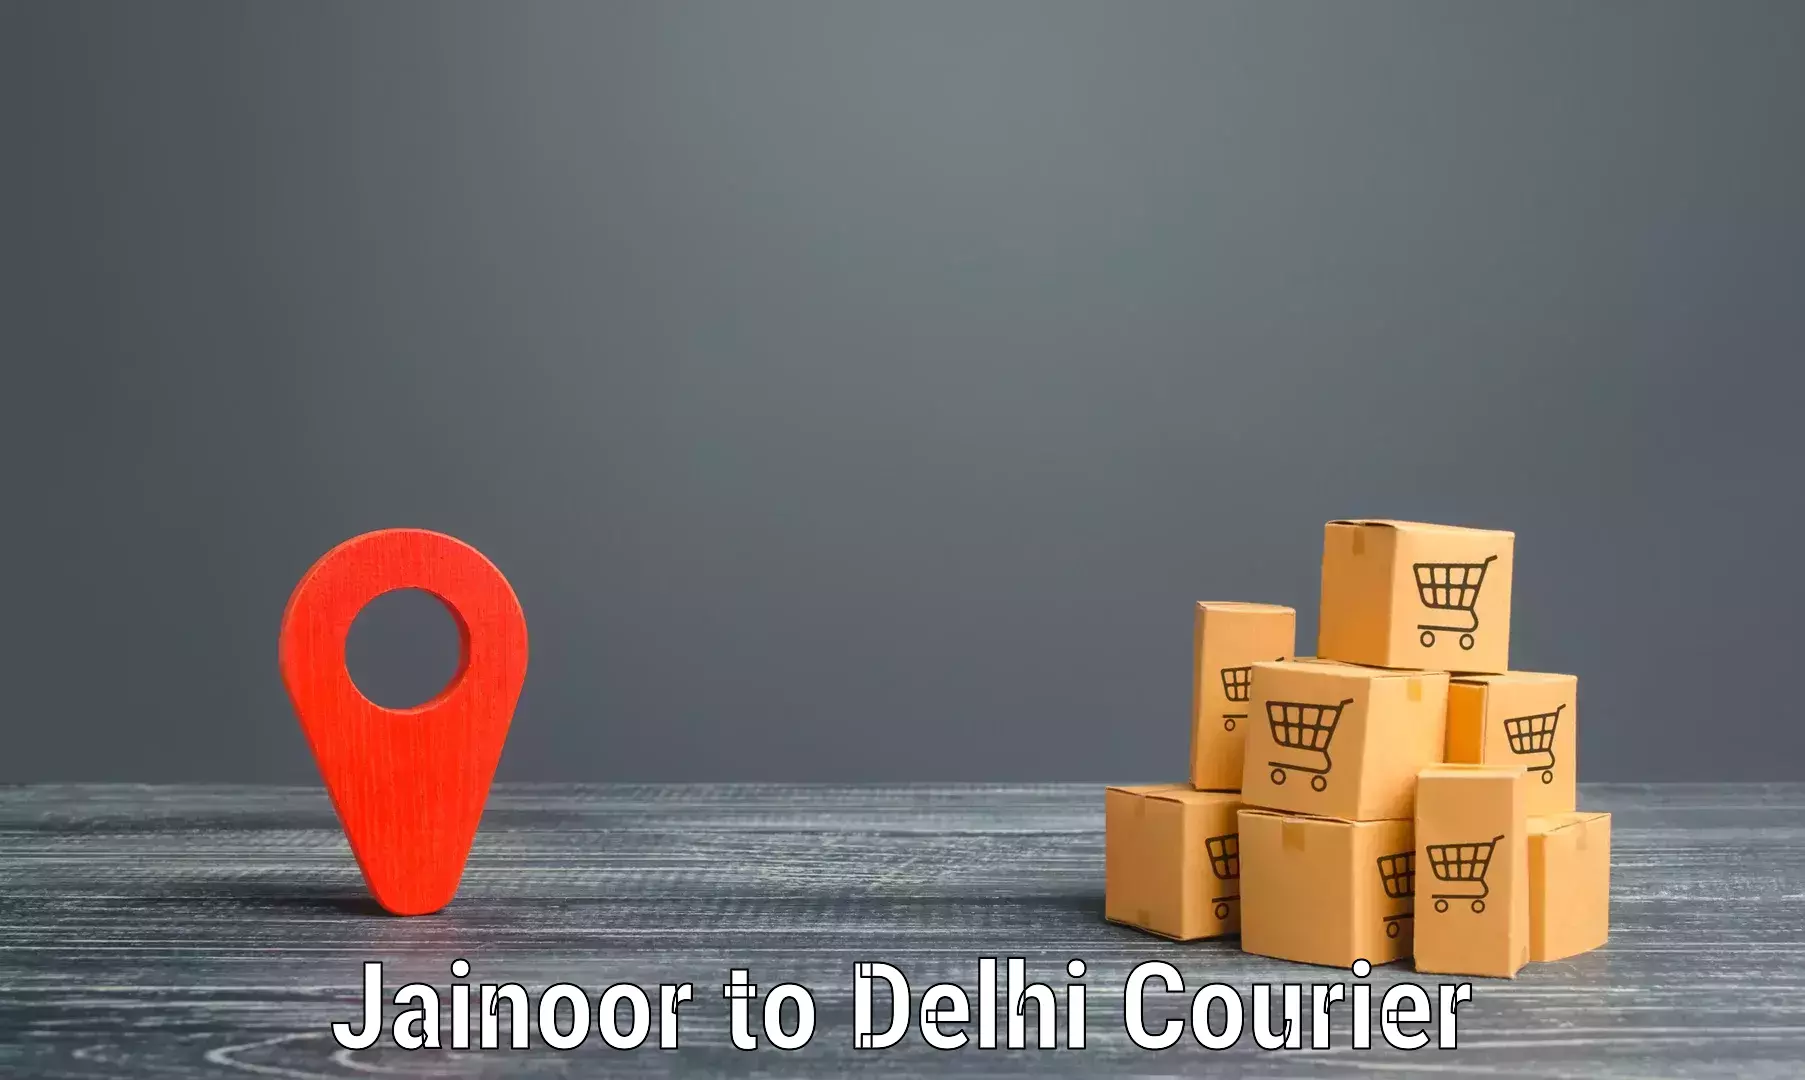 Efficient cargo services Jainoor to Jamia Hamdard New Delhi